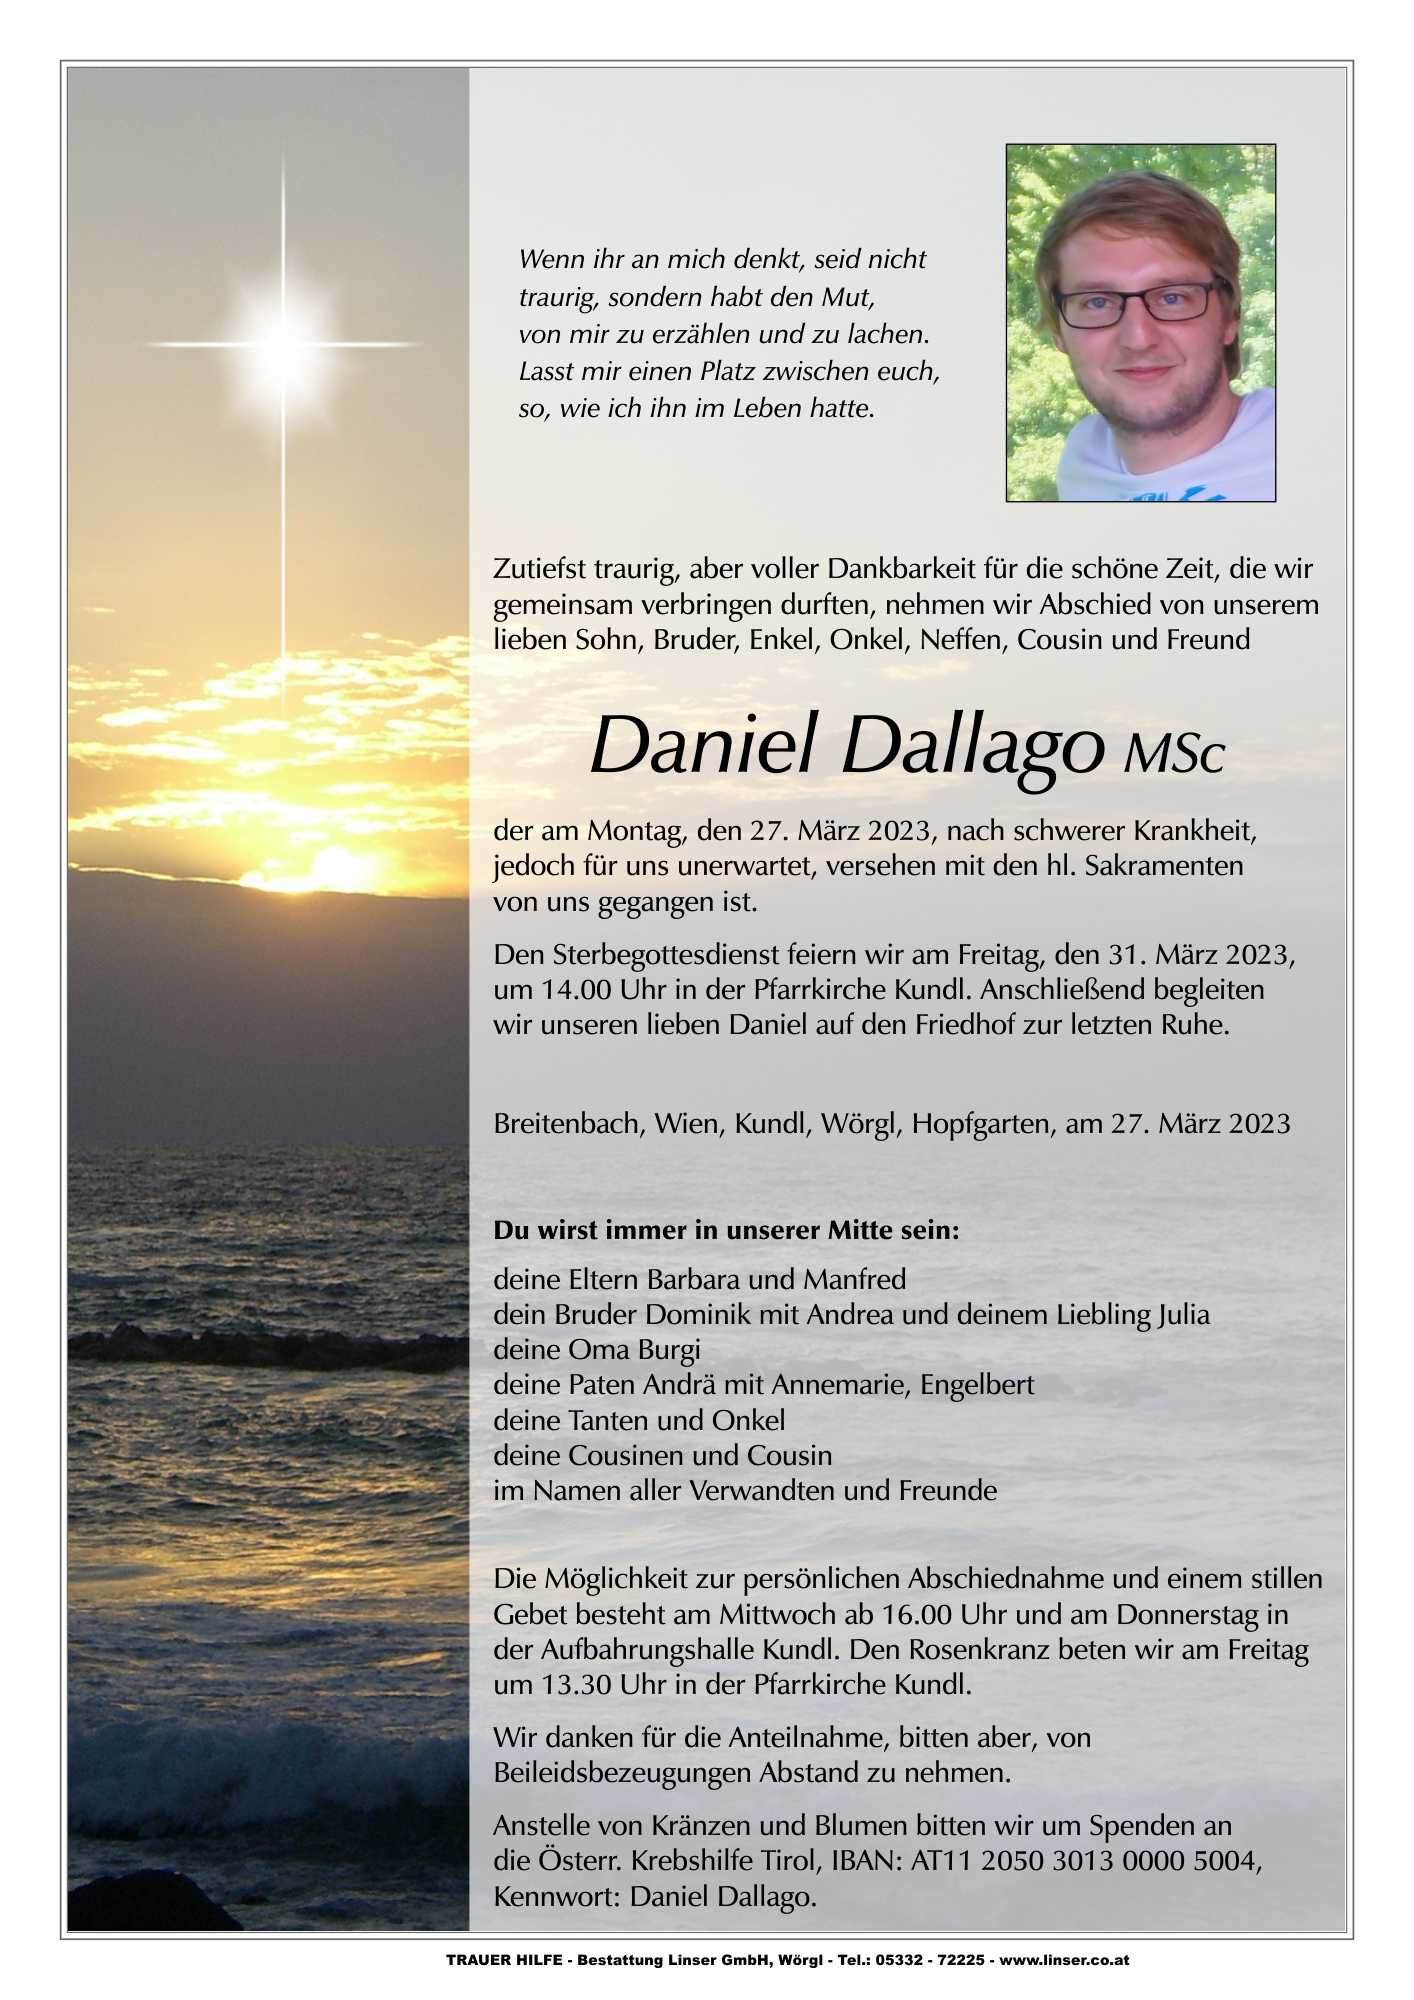 Daniel Dallago